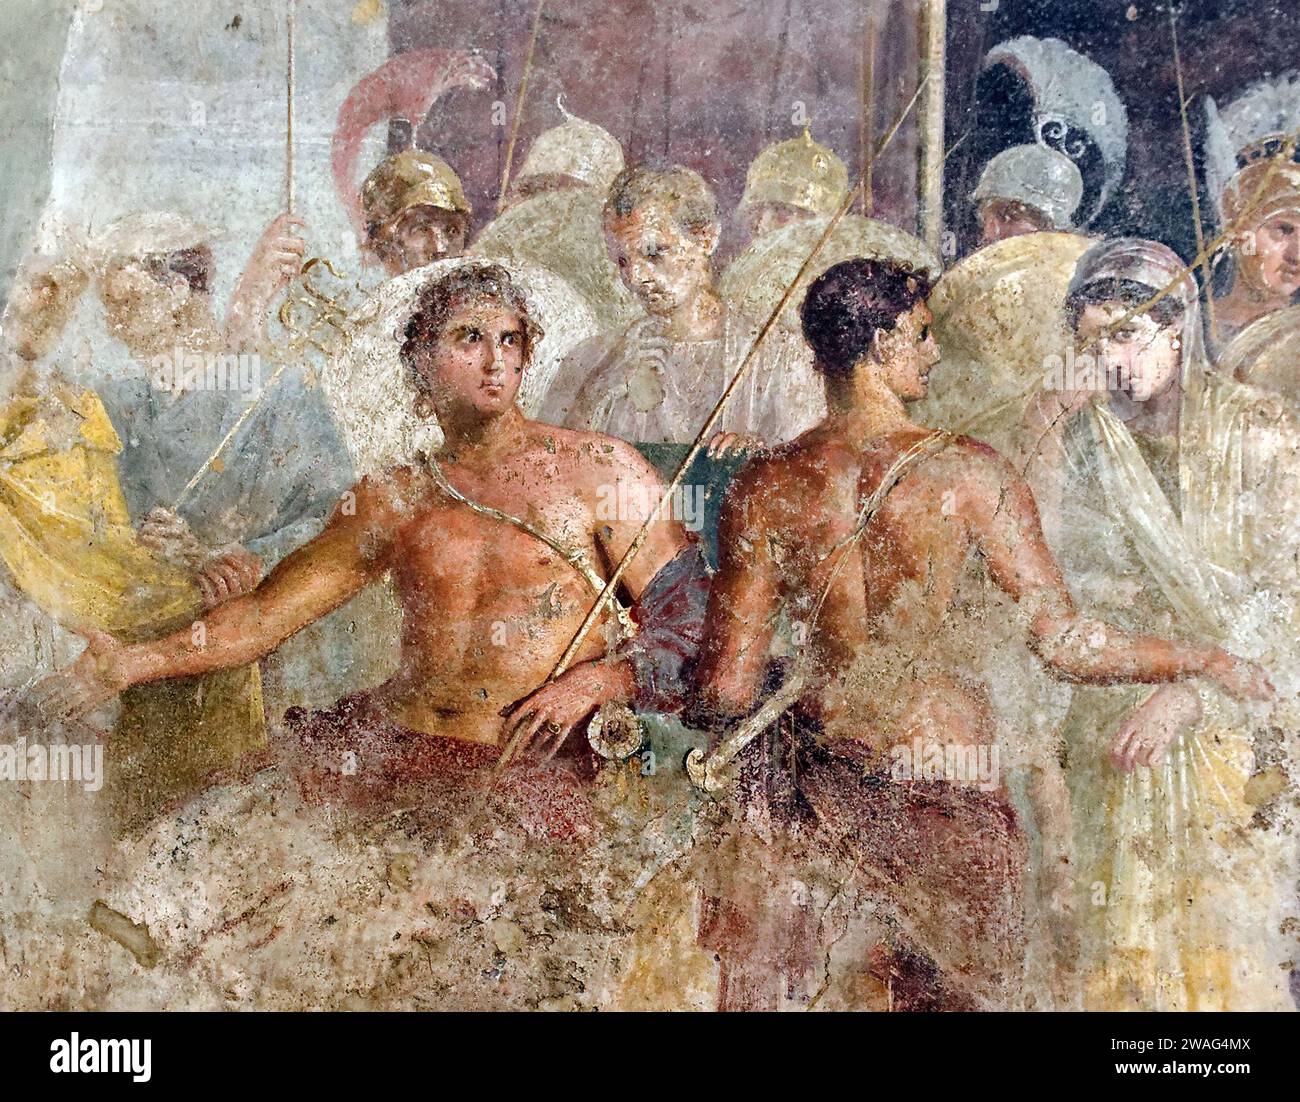 Agamemnon. La reddition d'Achille de Briseis à Agamemnon, de la Maison du poète tragique à Pompéi, Italie, fresque, 1e siècle après JC. Dans la mythologie grecque, Agamemnon était un roi de Mycènes qui commandait les Grecs pendant la guerre de Troie. Banque D'Images